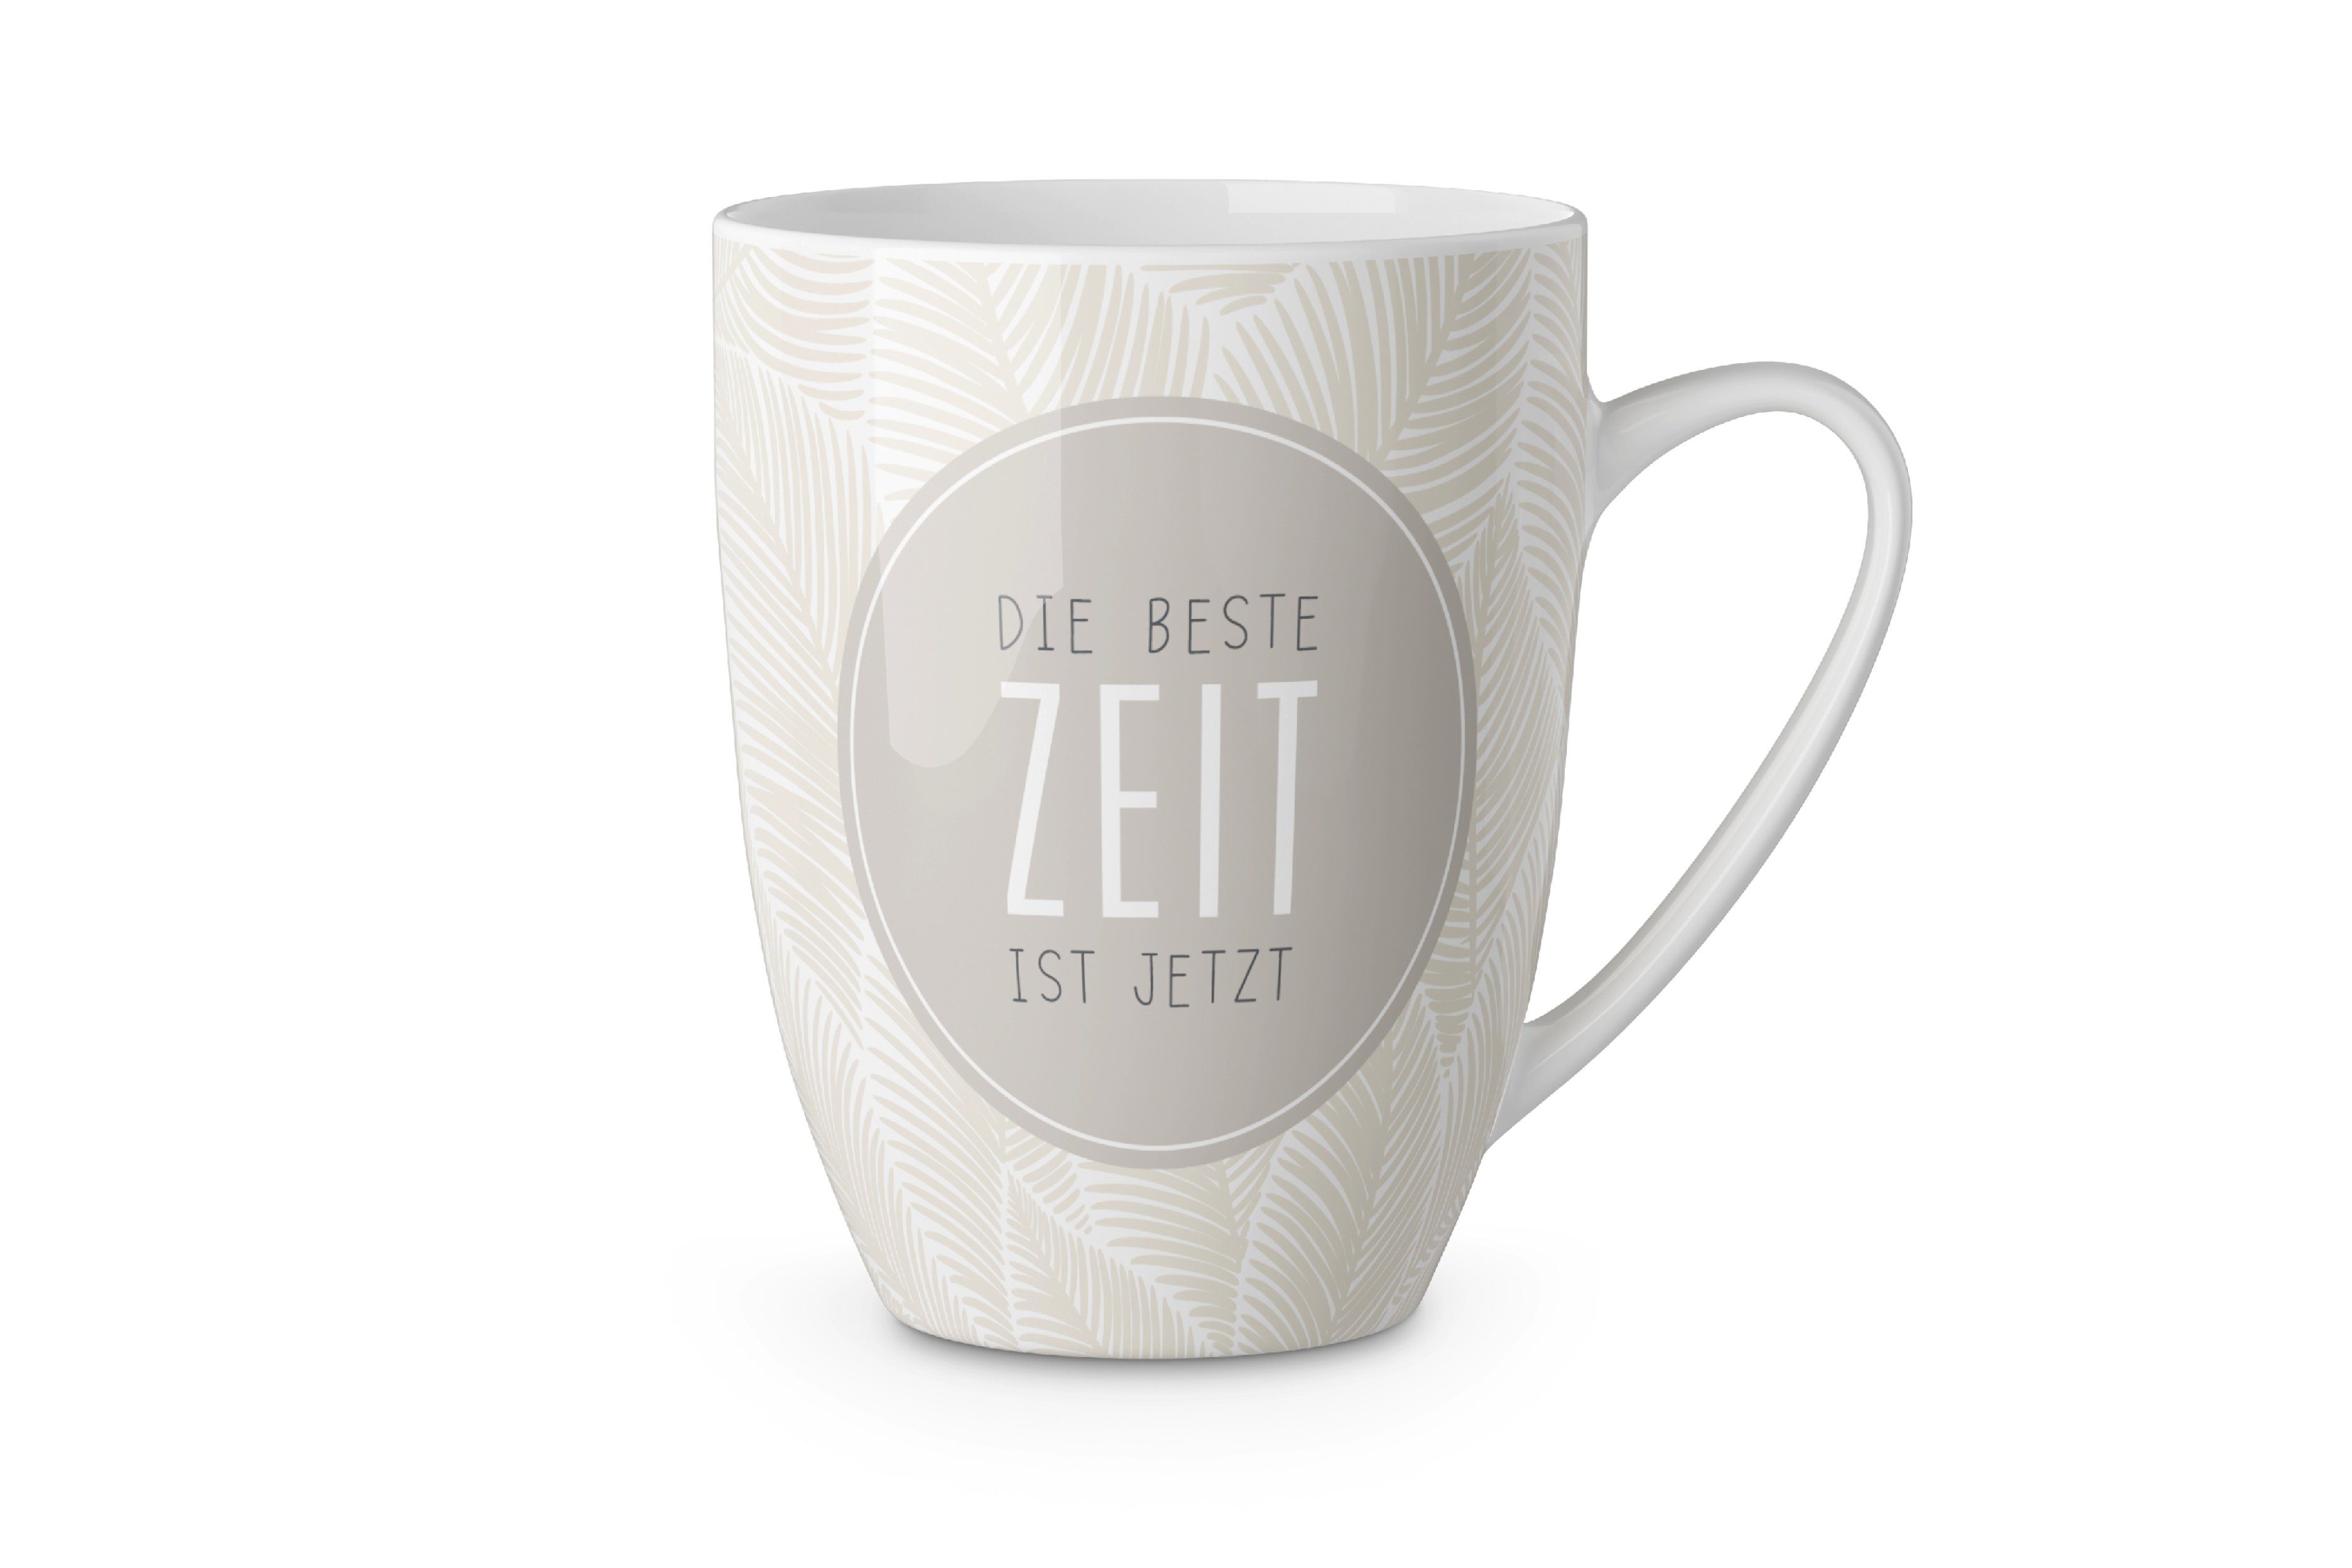 La Vida Tasse Kaffeetasse Kaffeebecher Tee Tasse Becher für dich 250ml la vida, Material: Keramik